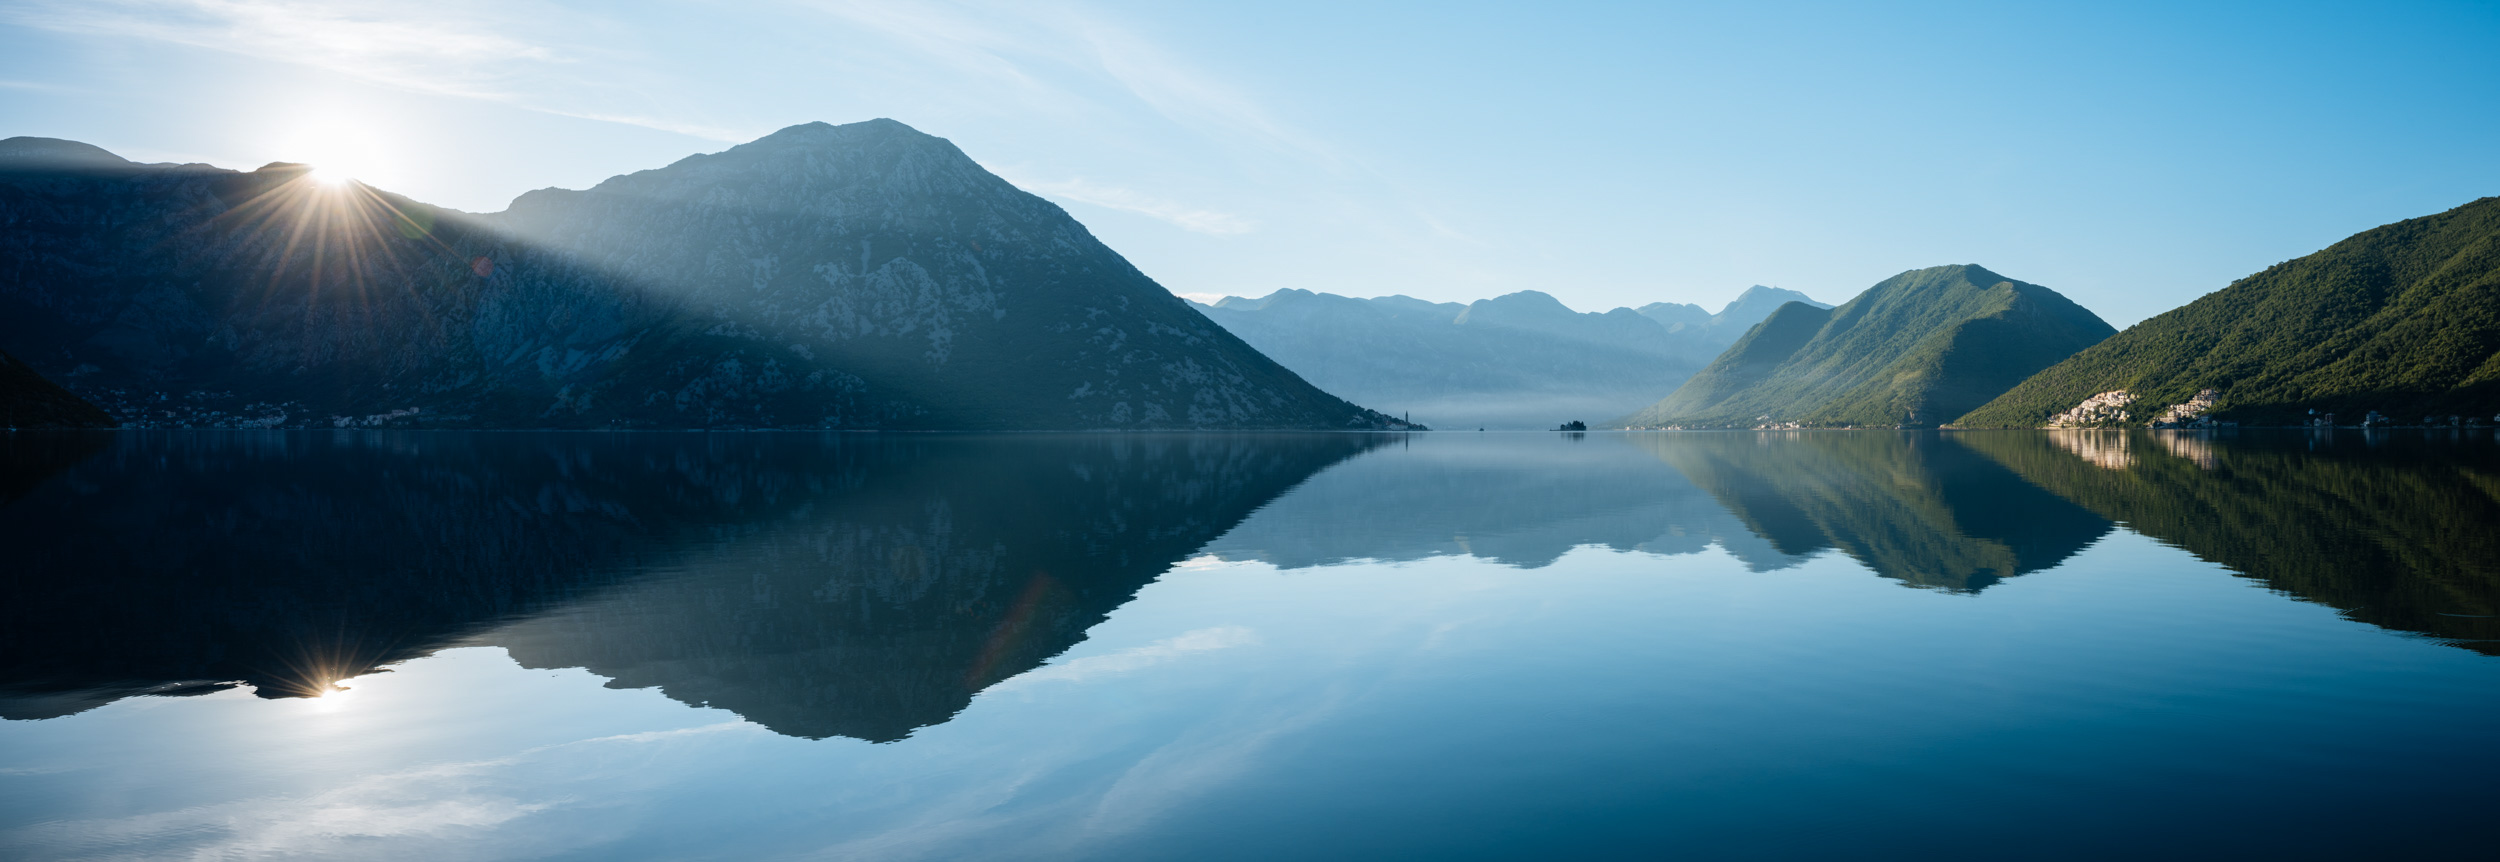 dawn-bay-kotor-lake-montenegro-travel-balkans-panoramic-landscape